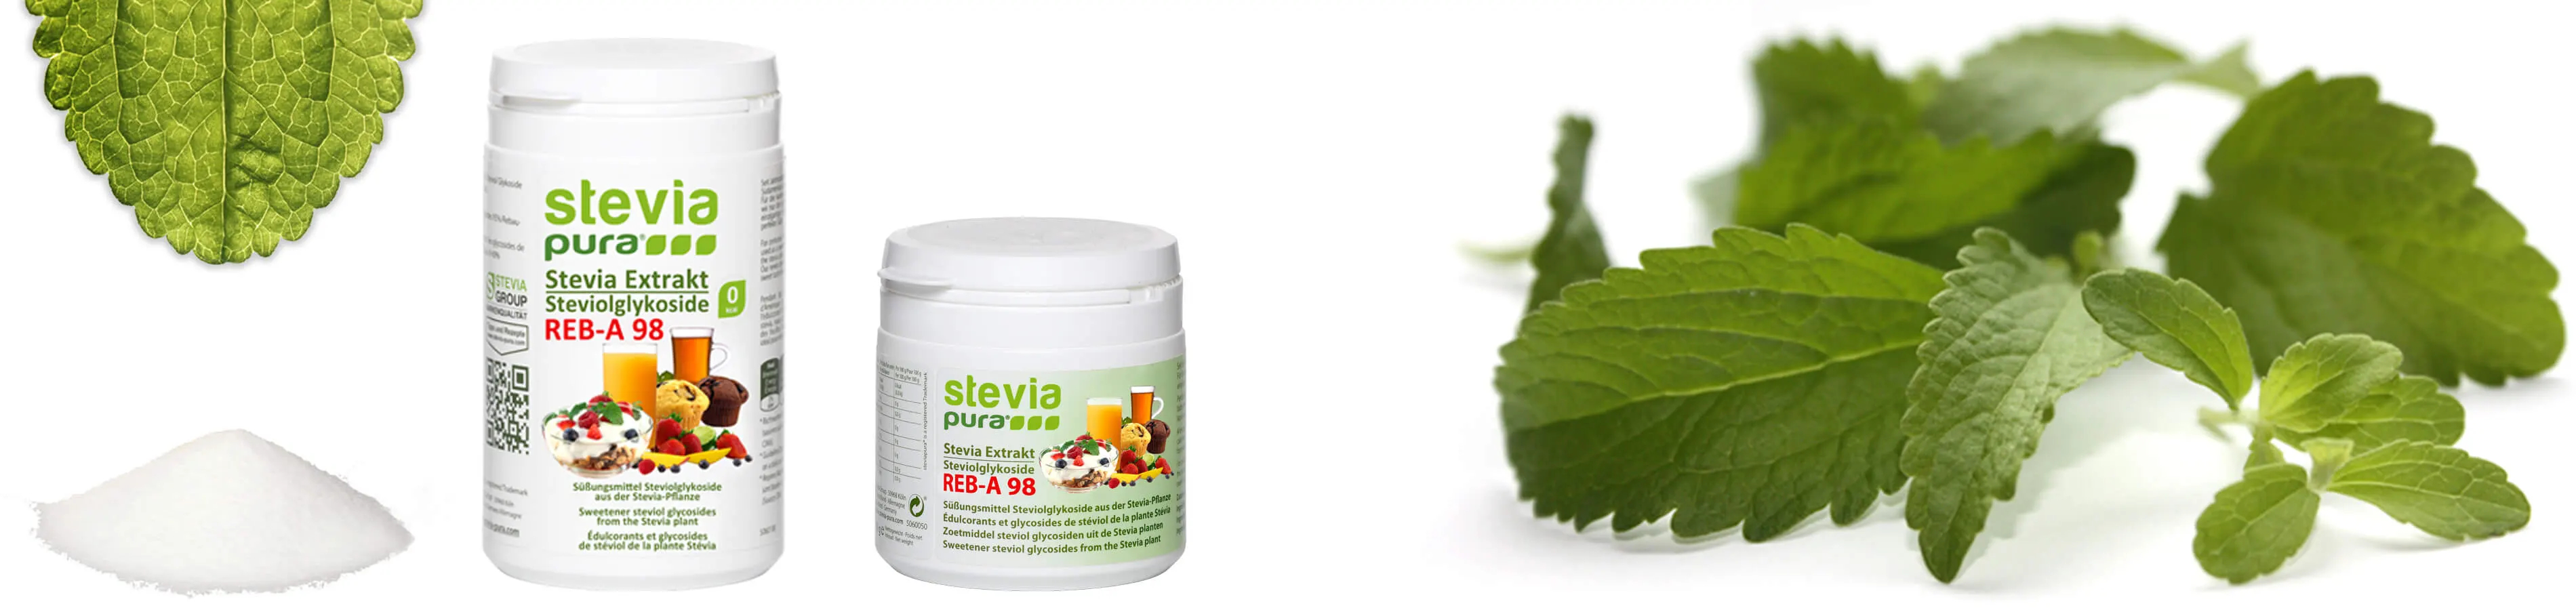 Los Glucósidos de Esteviol  son los ingredientes dulces de la planta Stevia. El polvo de Stevia puro y sin adulterar se utiliza como sustituto del azúcar o Edulcorante.